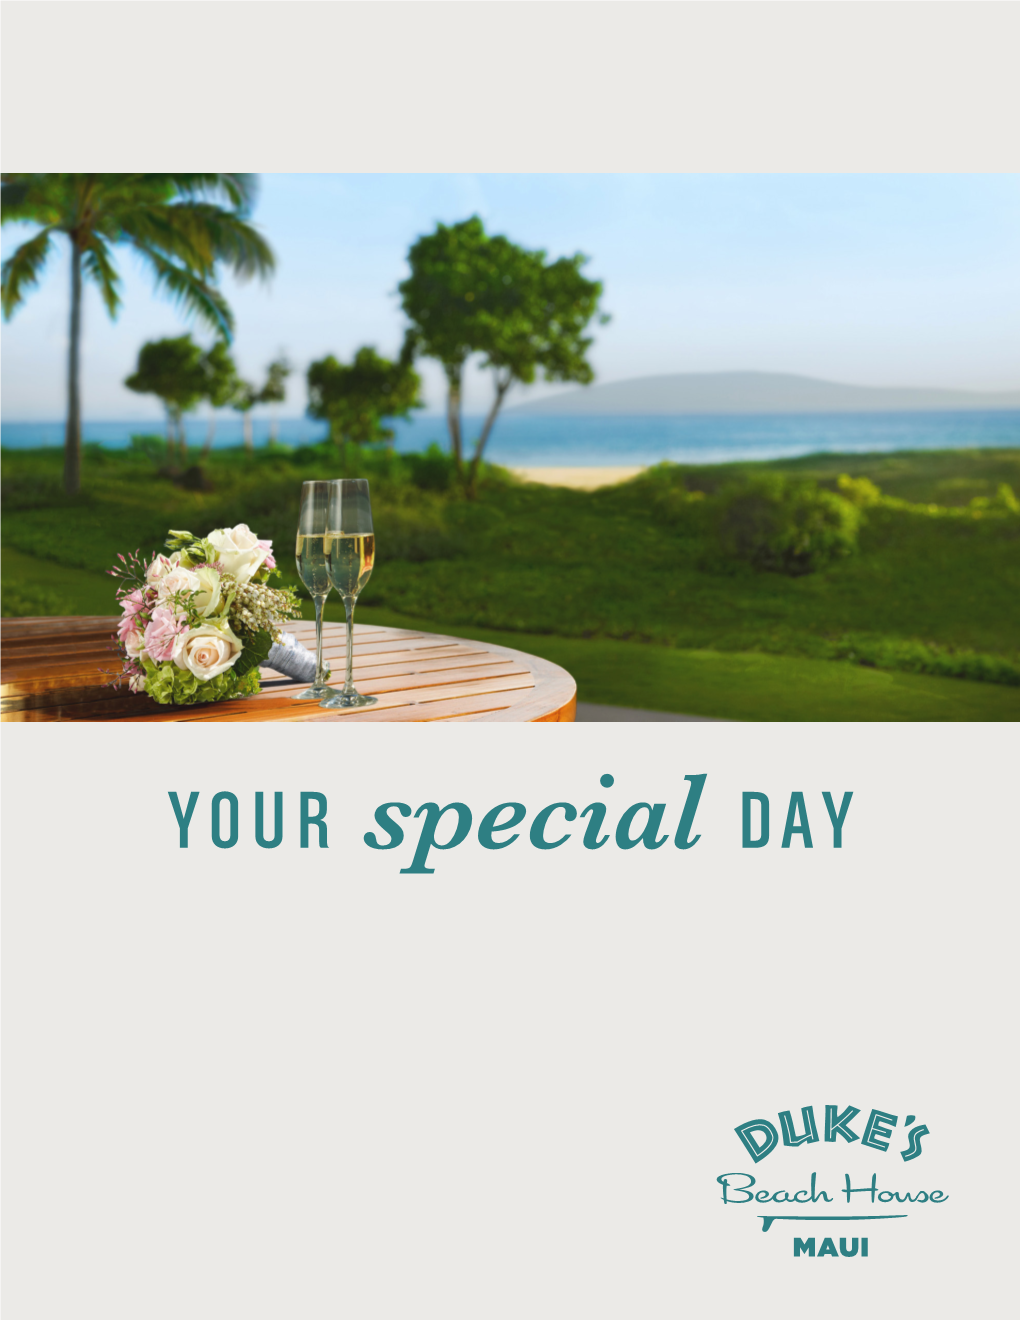 YOUR Special DAY Aloha WELCOME to DUKE’S BEACH HOUSE MAUI